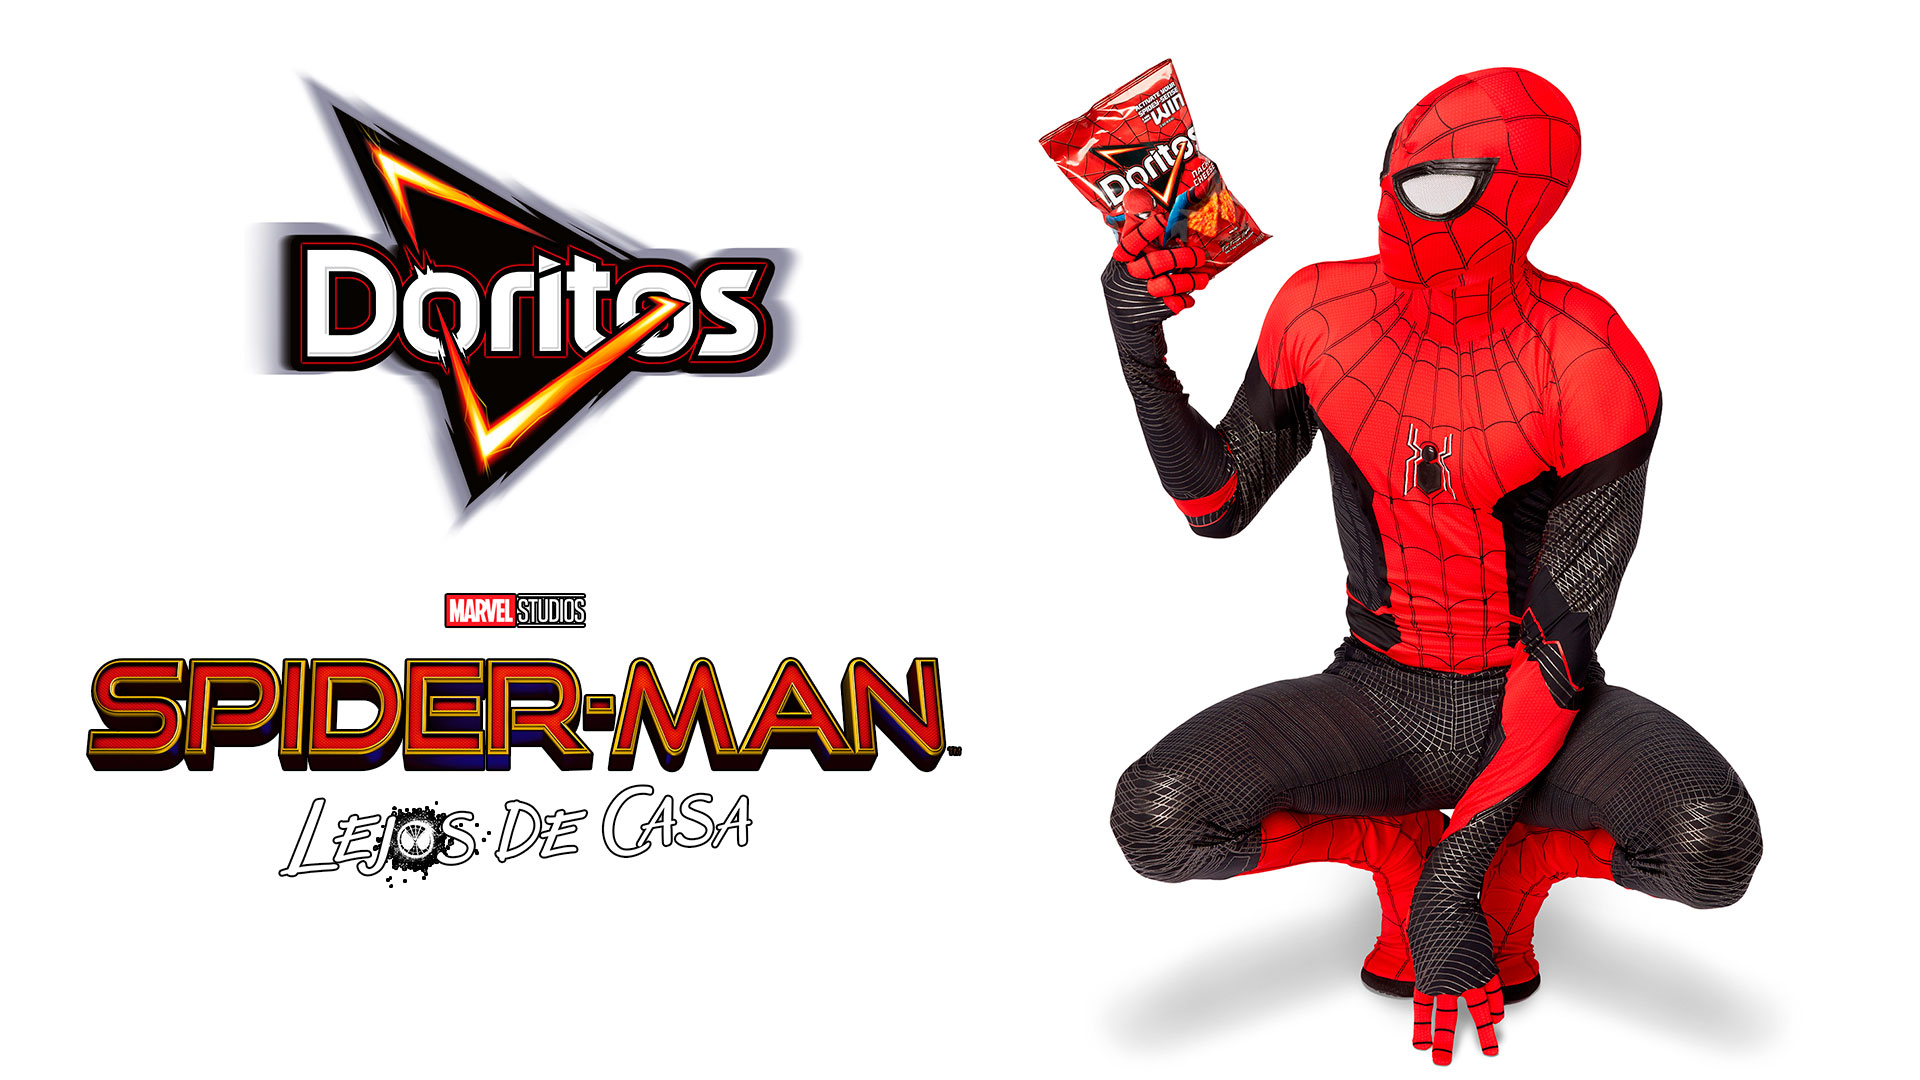 Facturable Probablemente Imperativo El traje de Spider-Man en tus Doritos - Juegos Juguetes y Coleccionables